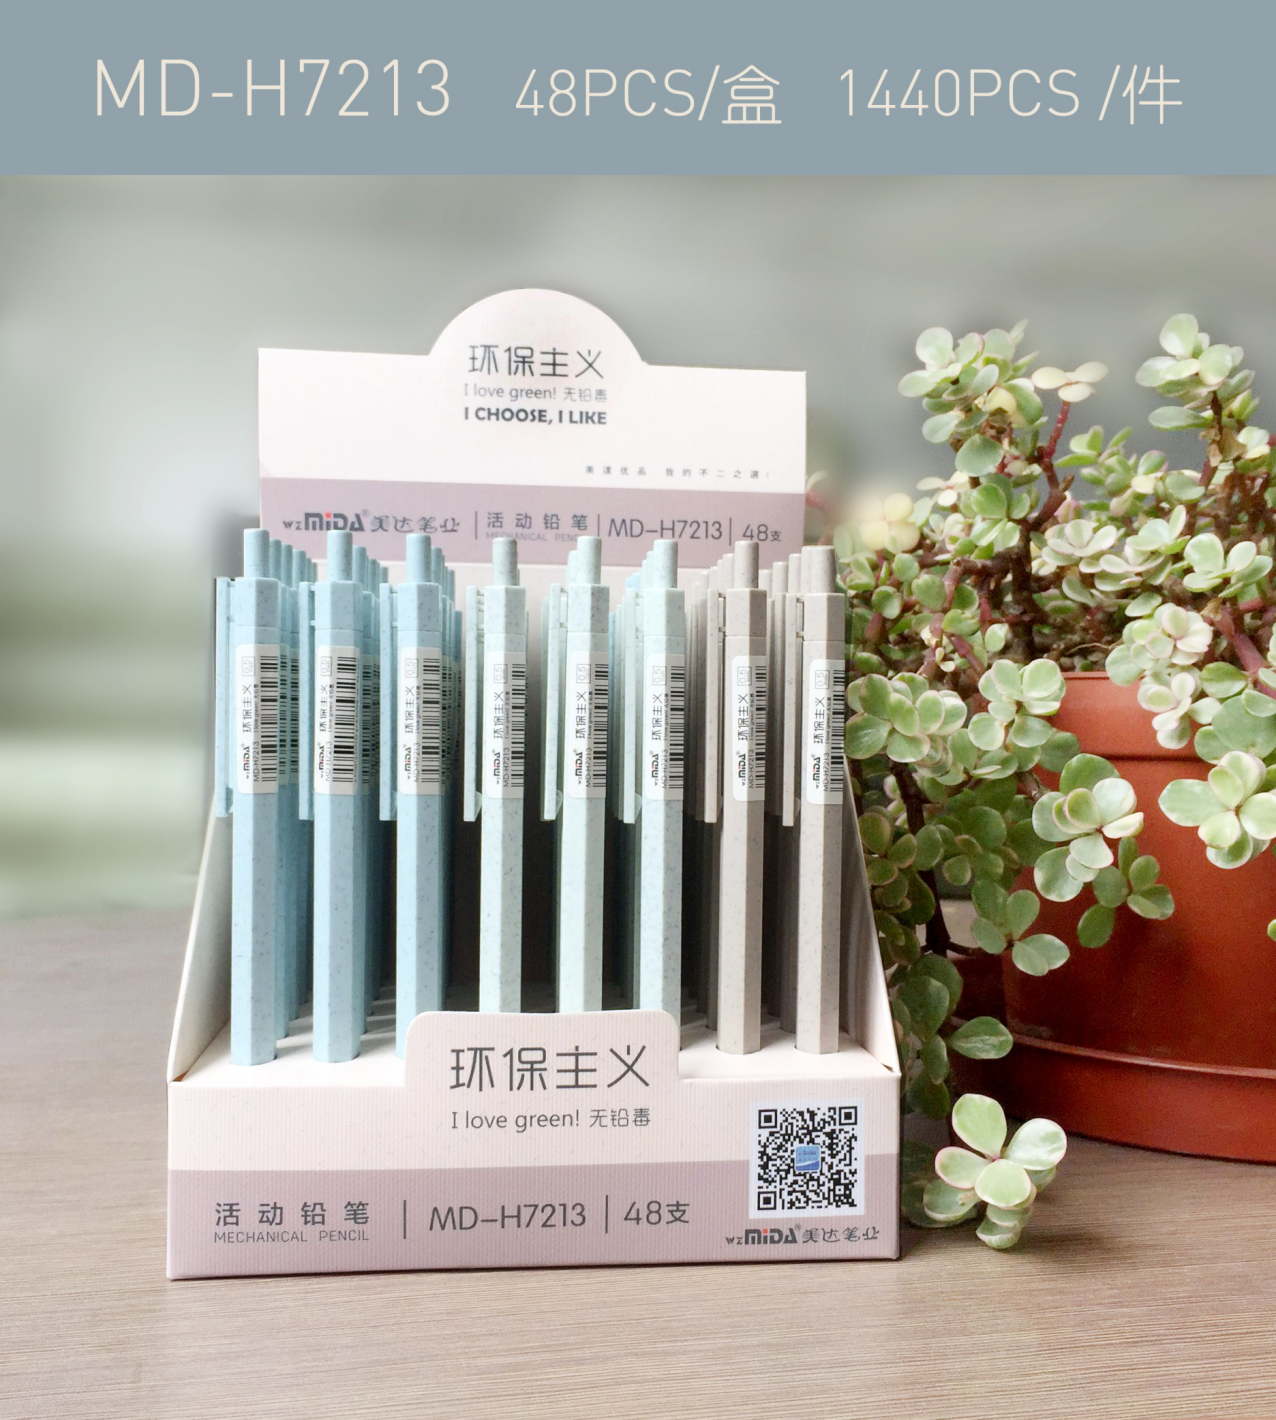 美达塑料自动铅笔系列MDH7213工厂自营店铺图